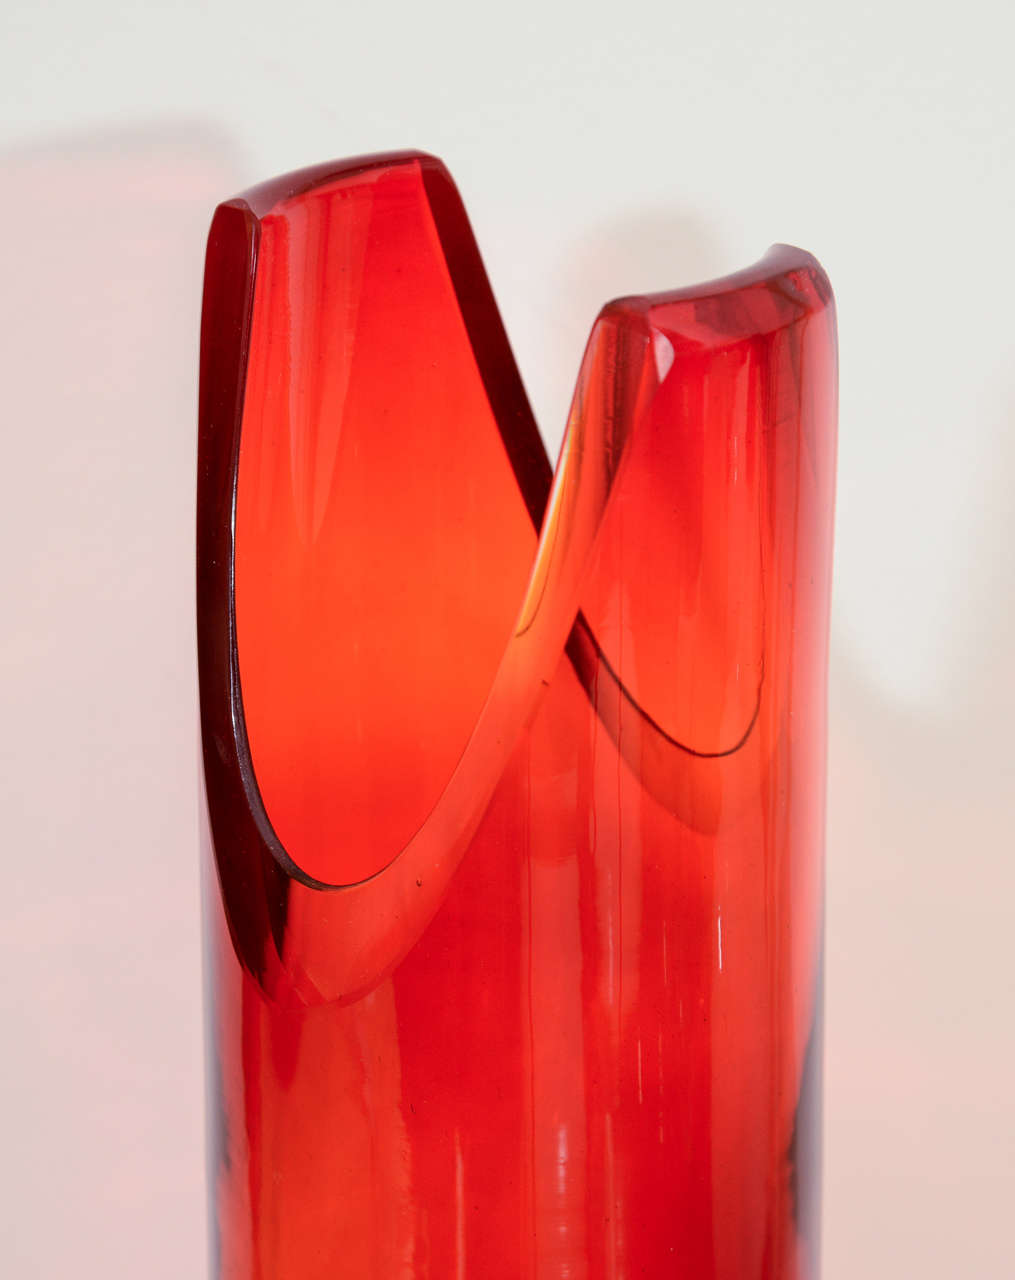 Tangerine Cut Cylinder Vase by Blenko 1